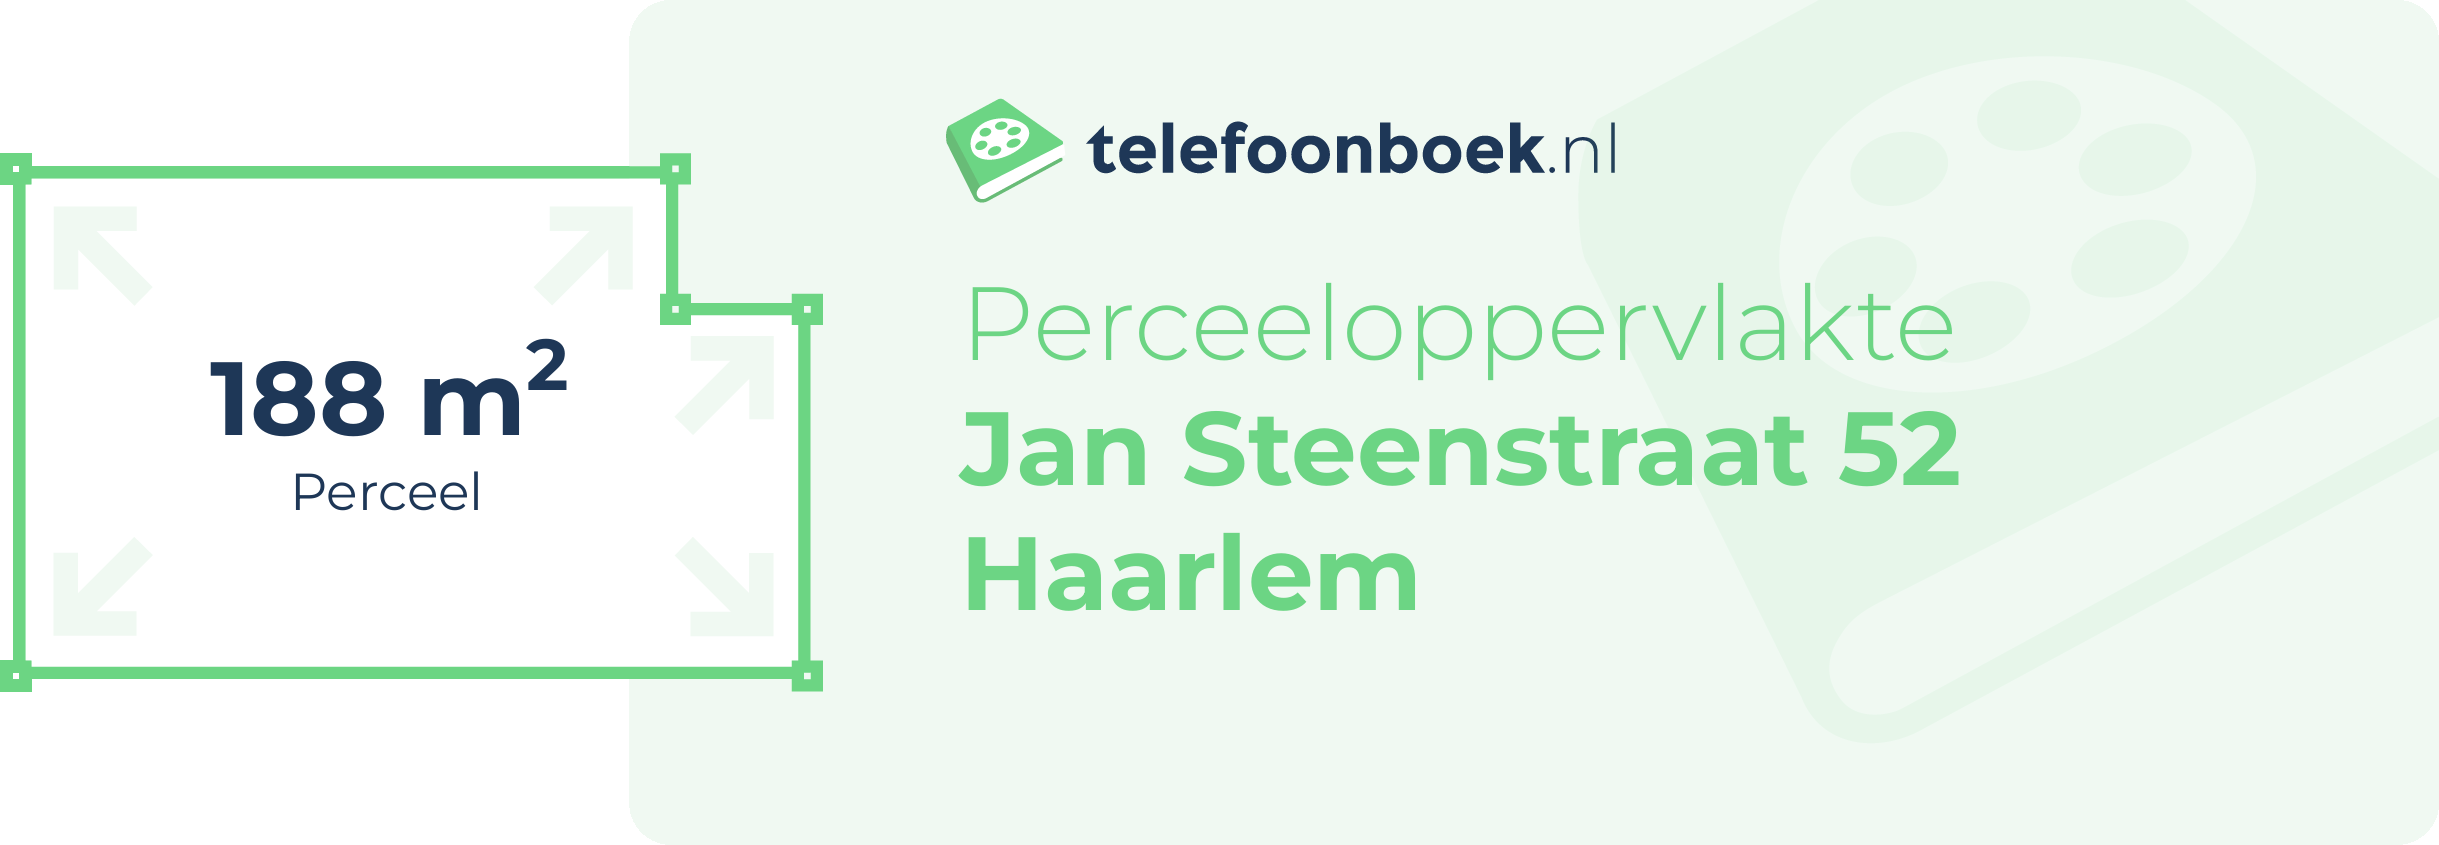 Perceeloppervlakte Jan Steenstraat 52 Haarlem